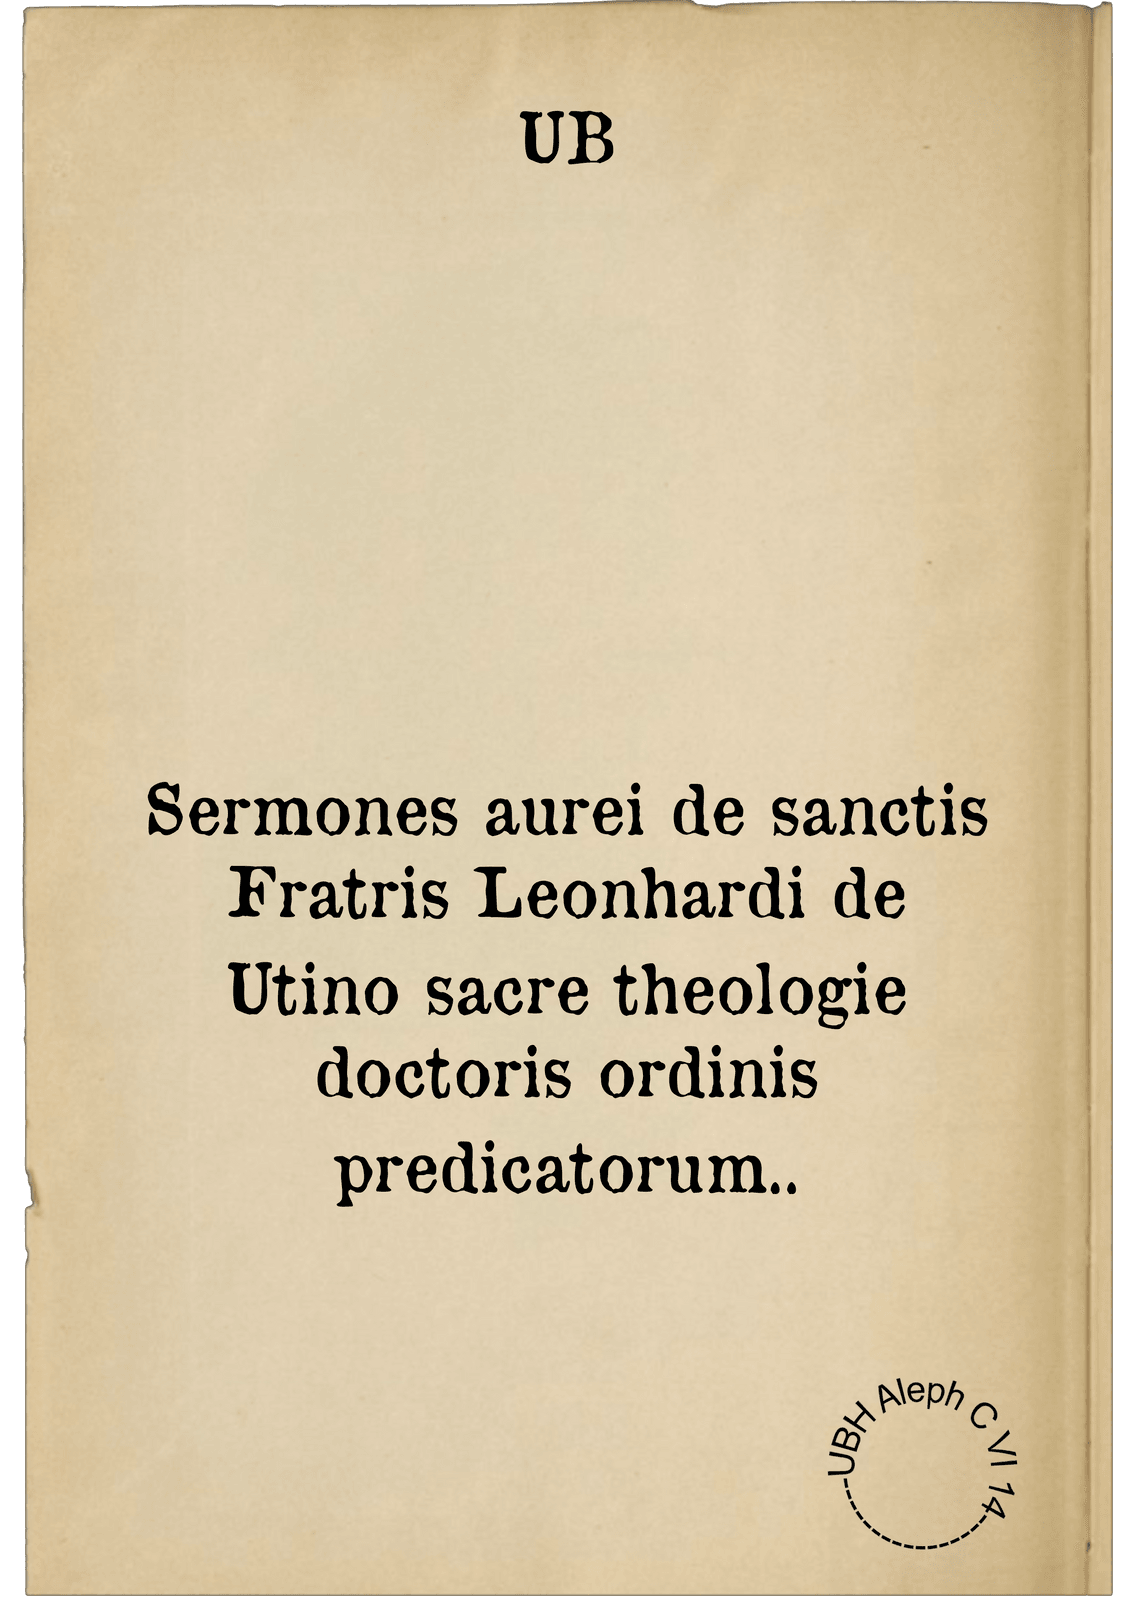 Sermones aurei de sanctis Fratris Leonhardi de Utino sacre theologie doctoris ordinis predicatorum..